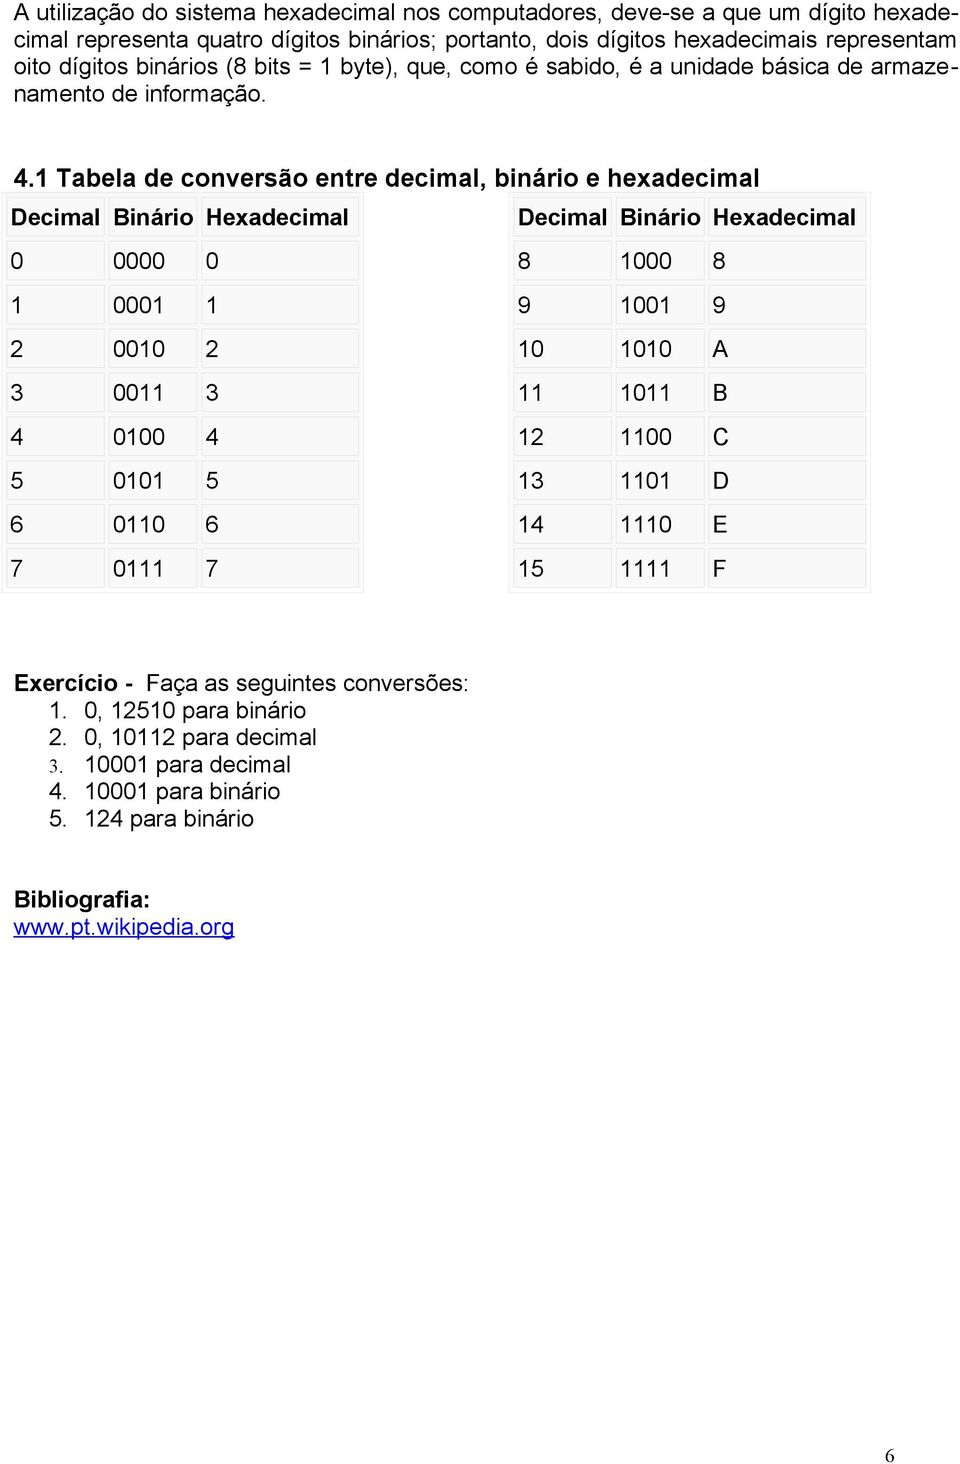 1 Tabela de conversão entre decimal, binário e hexadecimal Decimal Binário Hexadecimal Decimal Binário Hexadecimal 0 0000 0 8 1000 8 1 0001 1 9 1001 9 2 0010 2 10 1010 A 3 0011 3 11 1011